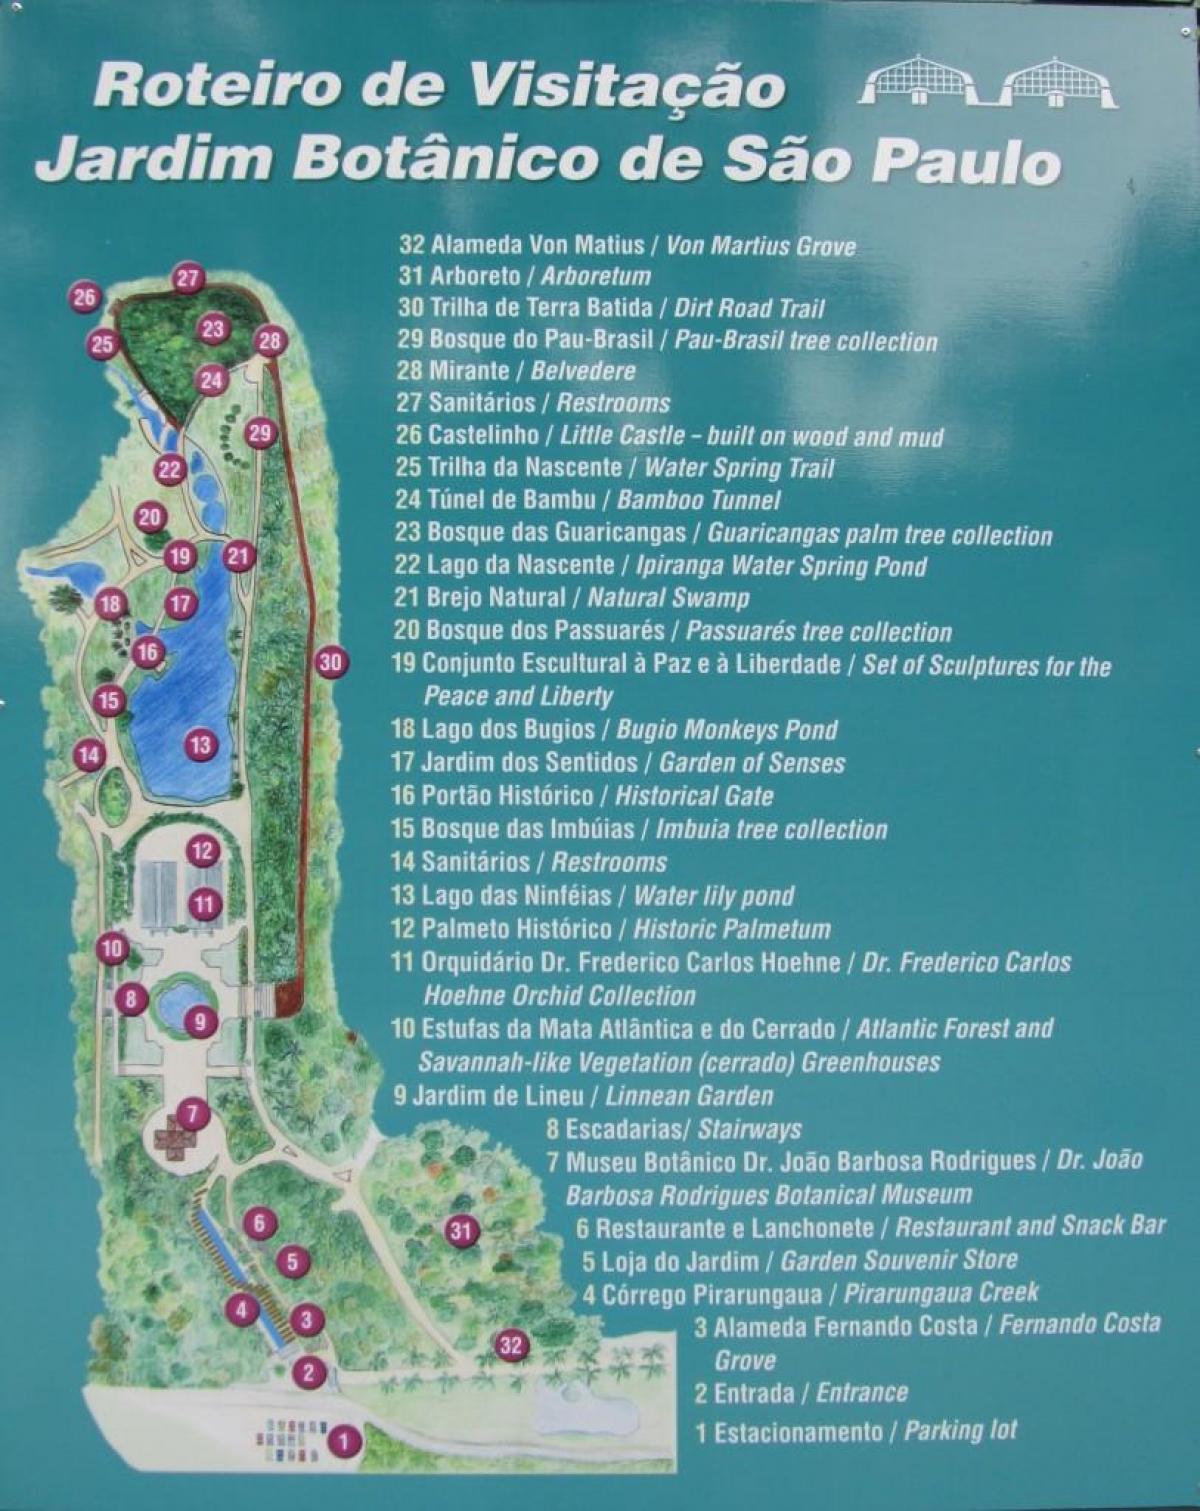 מפה של הגן הבוטני סאו פאולו